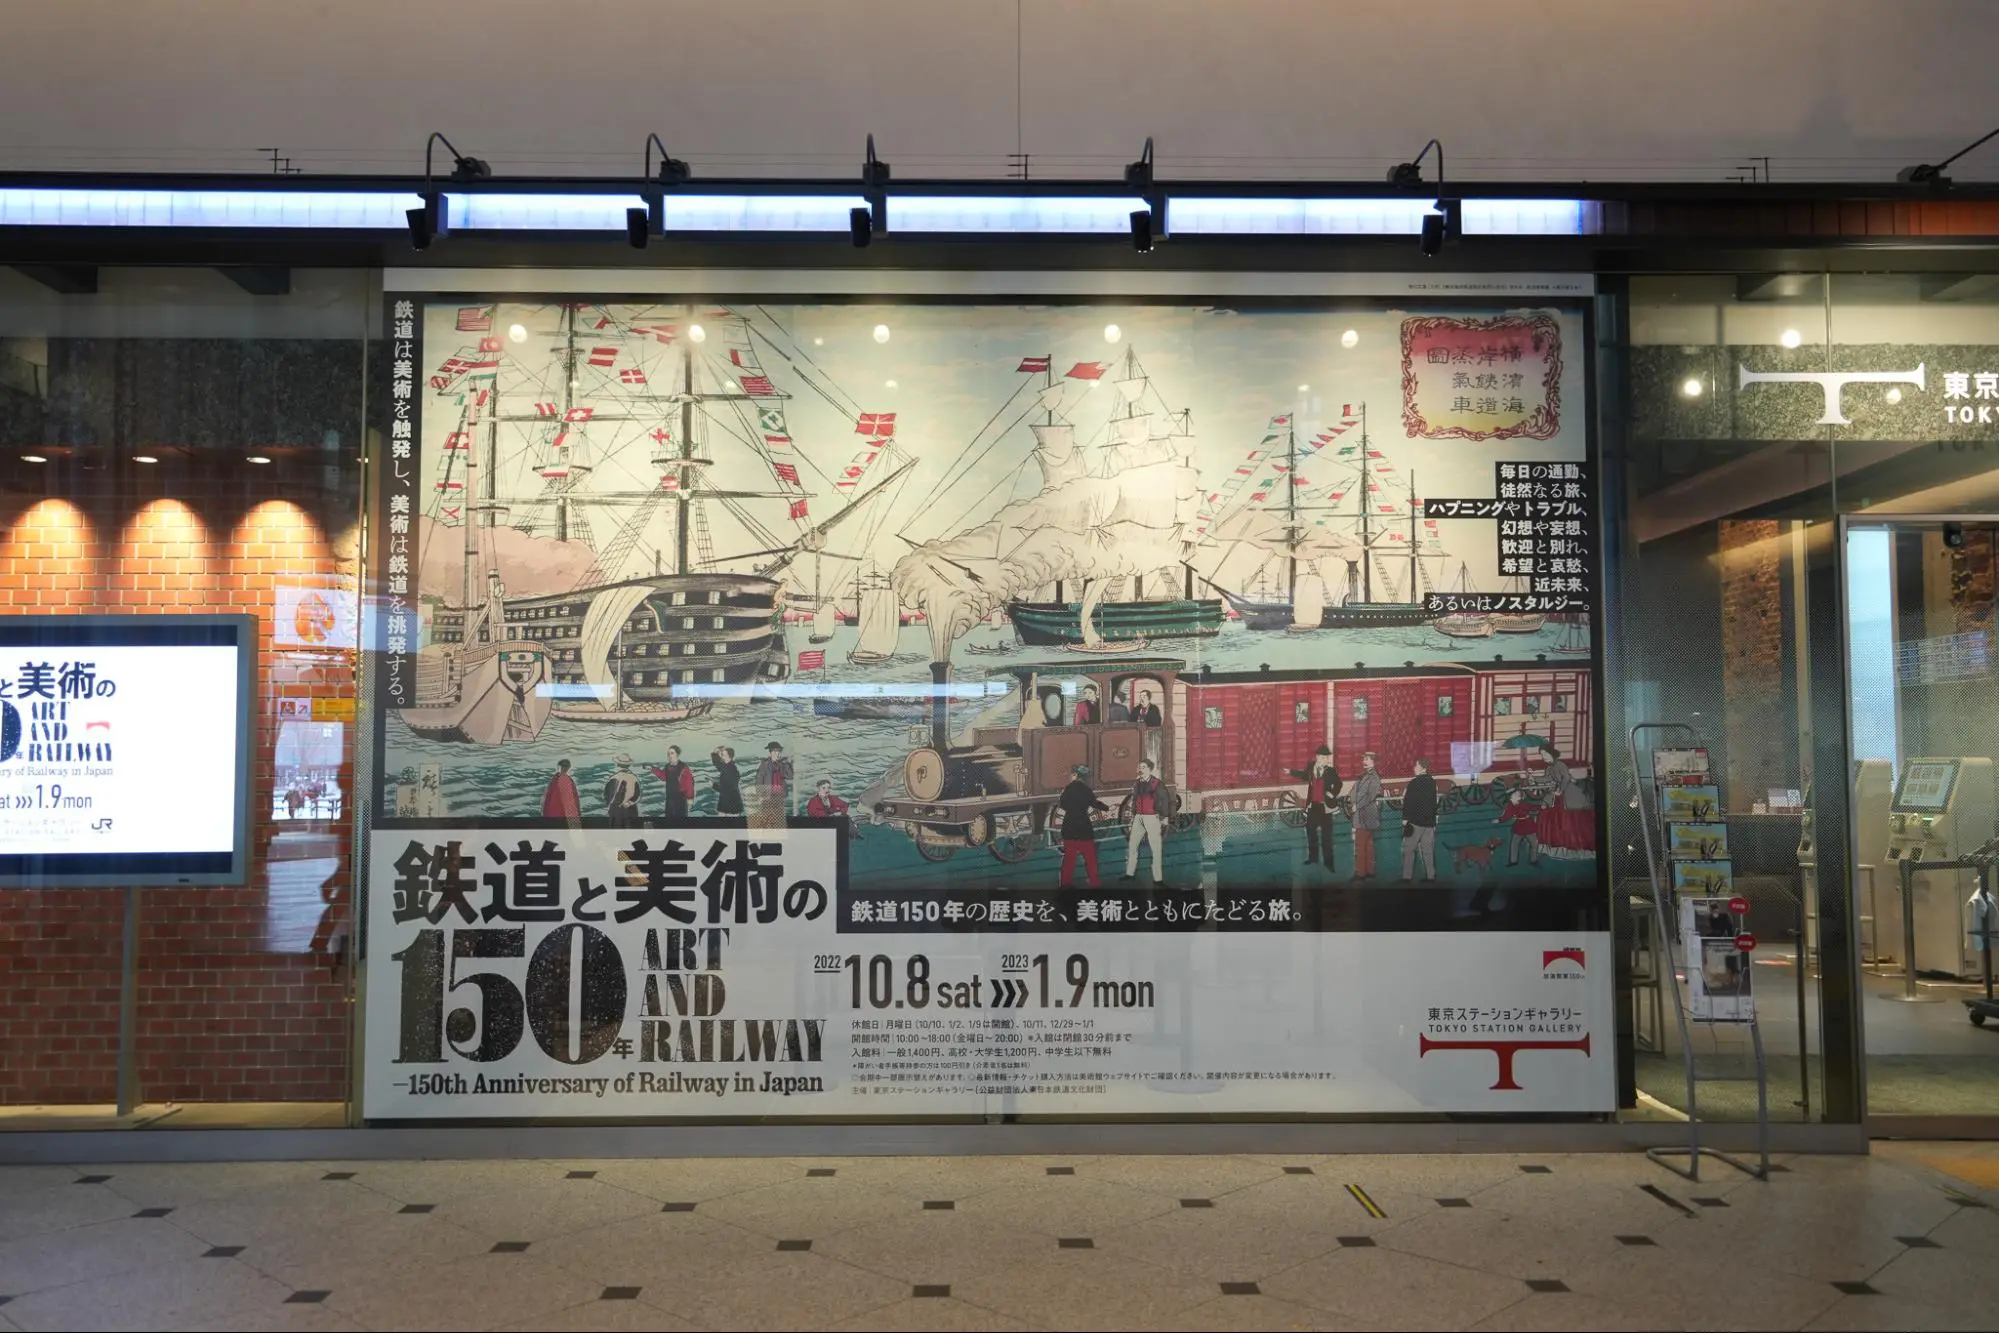 【鉄道150周年企画】東京ステーションギャラリー「鉄道と美術の150年」展へ行ってきました。